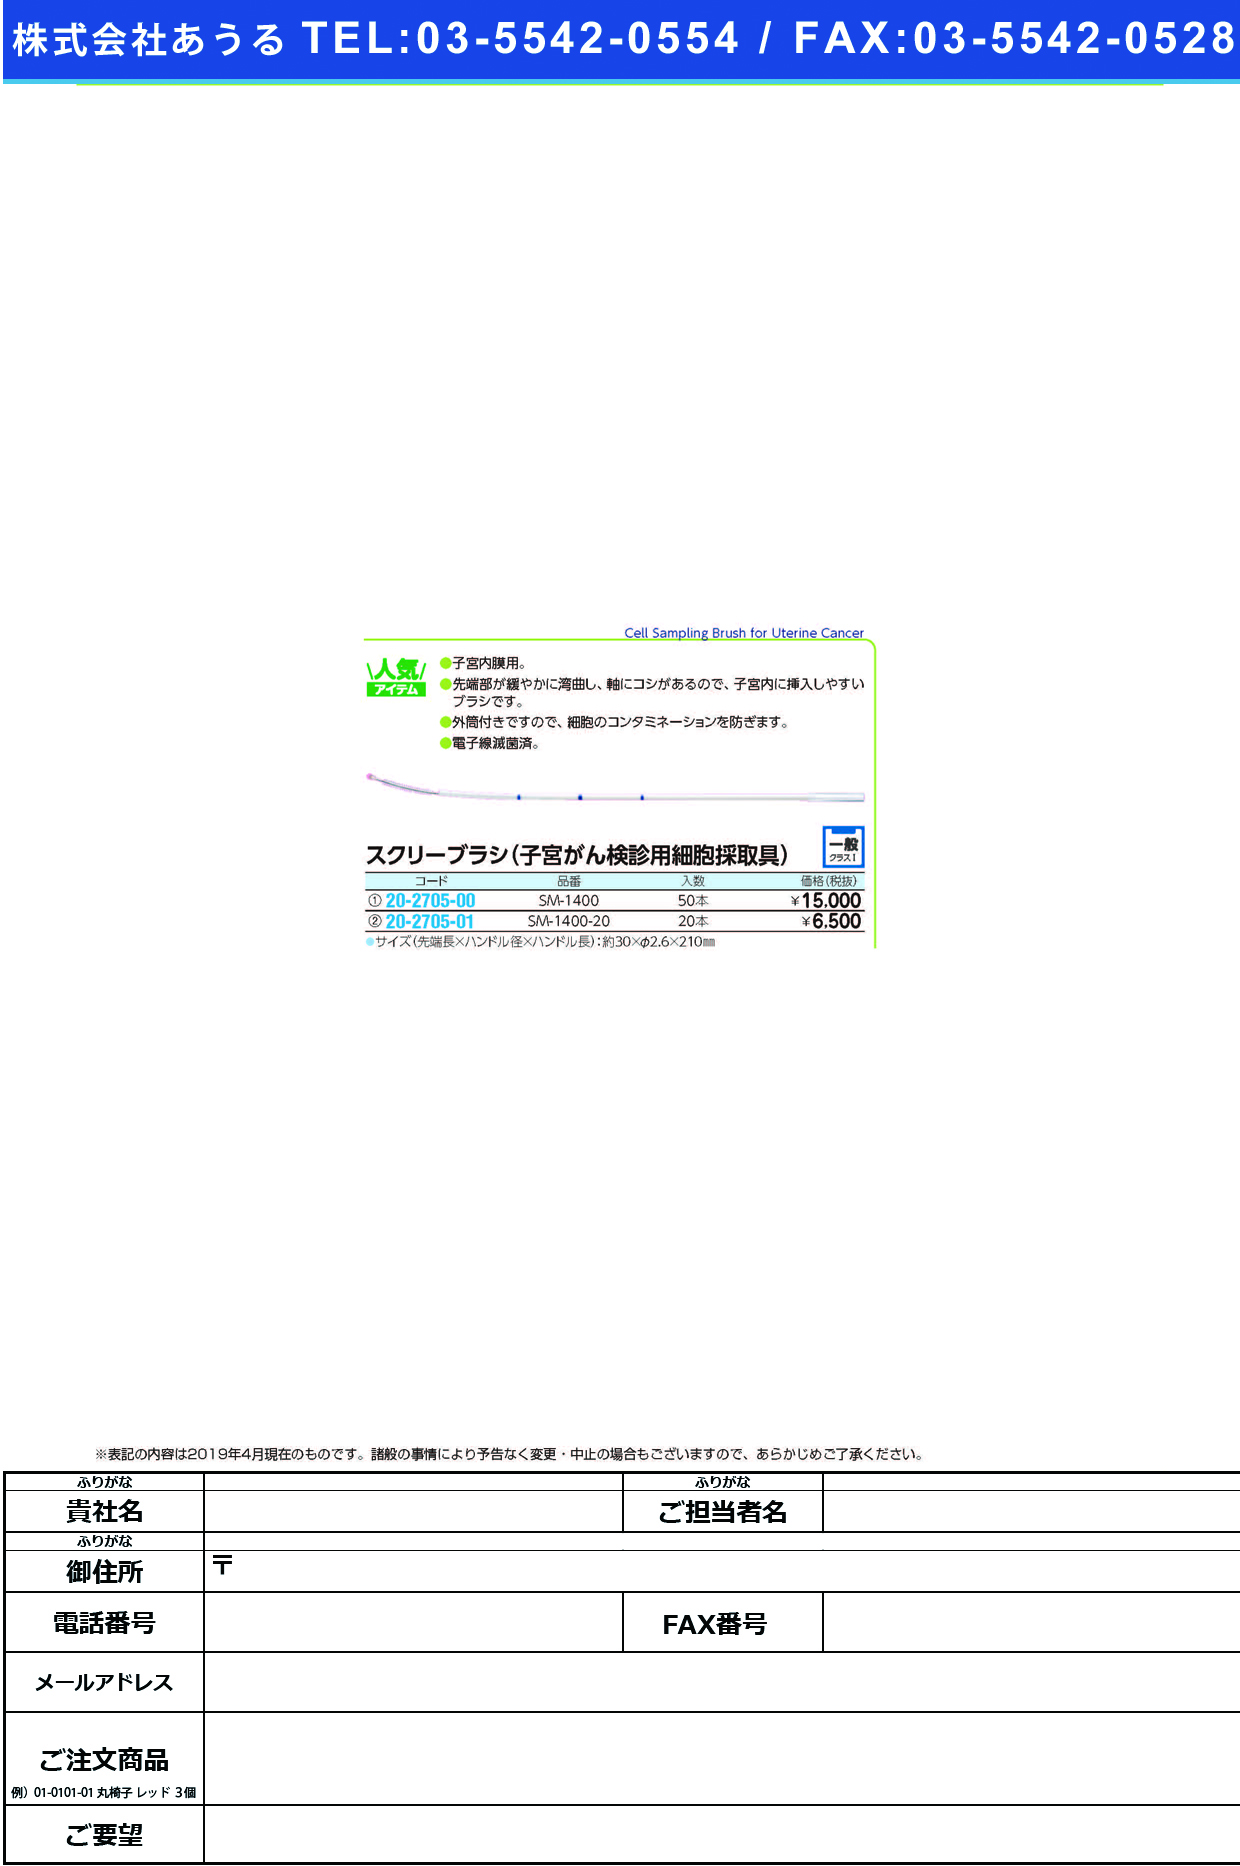 (20-2705-01)スクリーブラシ SM-1400-20(20ﾎﾟﾝｲﾘ) ｽｸﾘｰﾌﾞﾗｼ(ソフトメディカル)【1箱単位】【2019年カタログ商品】